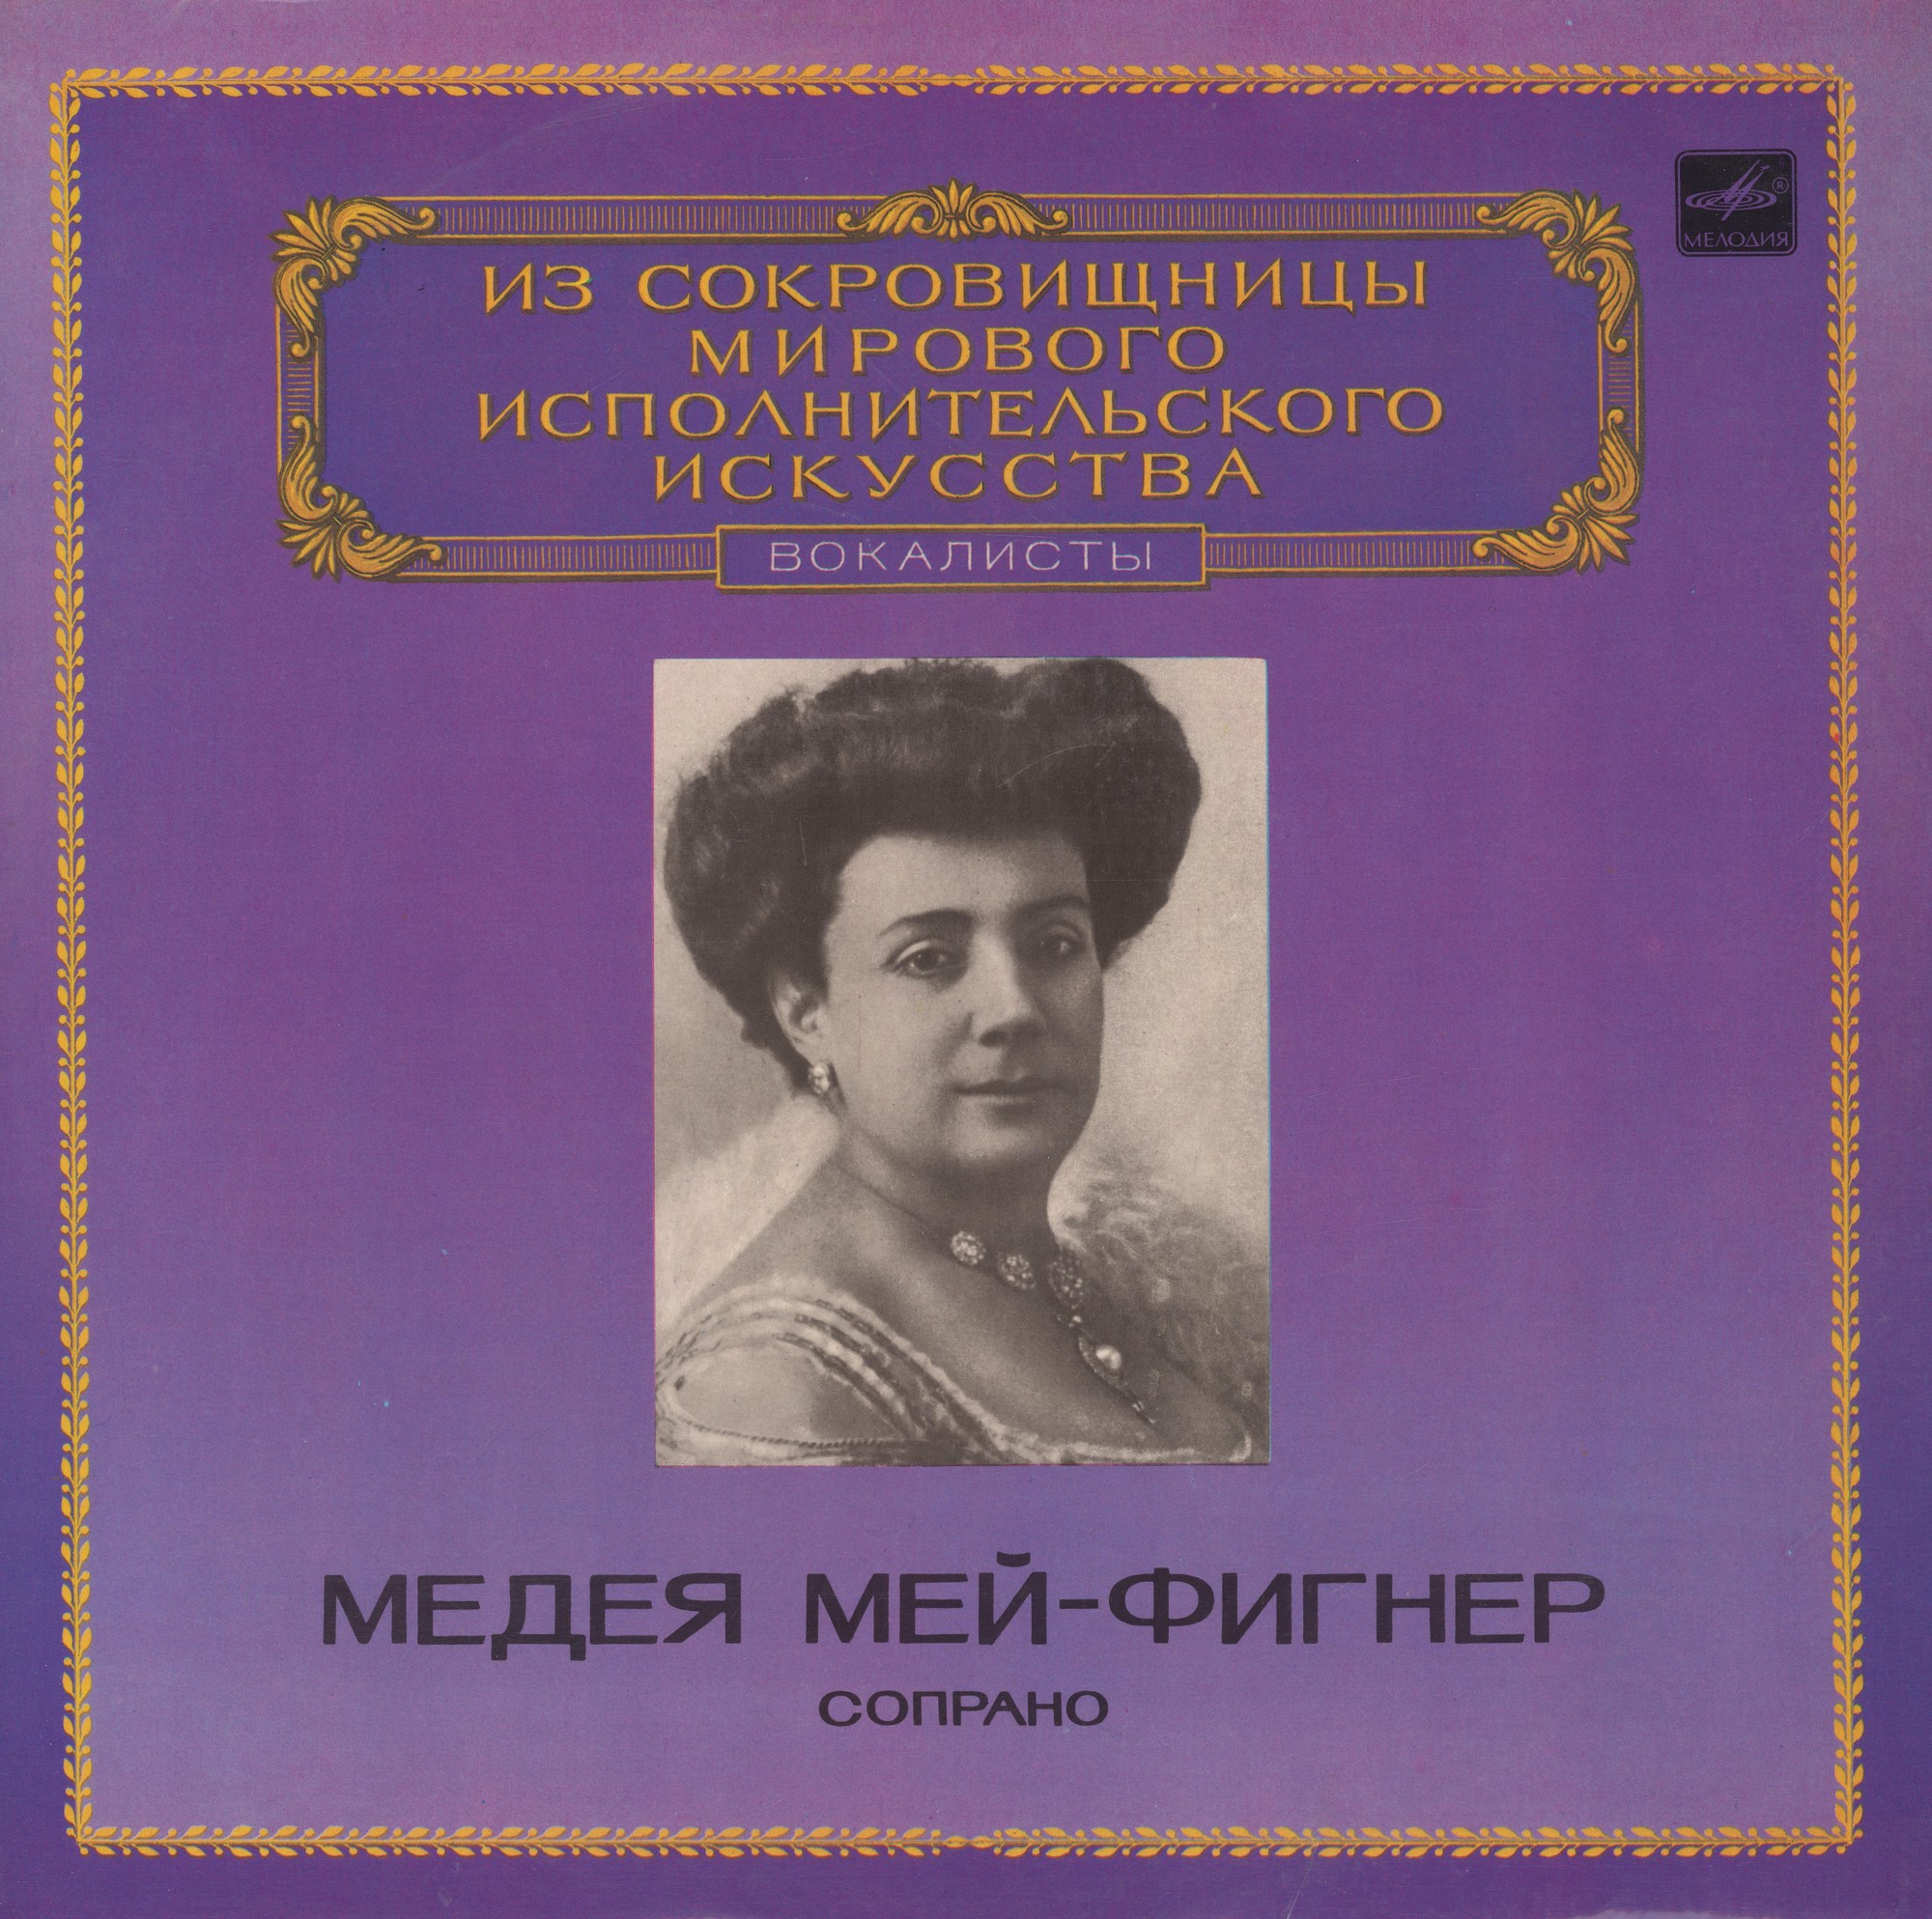 Медея Мей-Фигнер (сопрано)